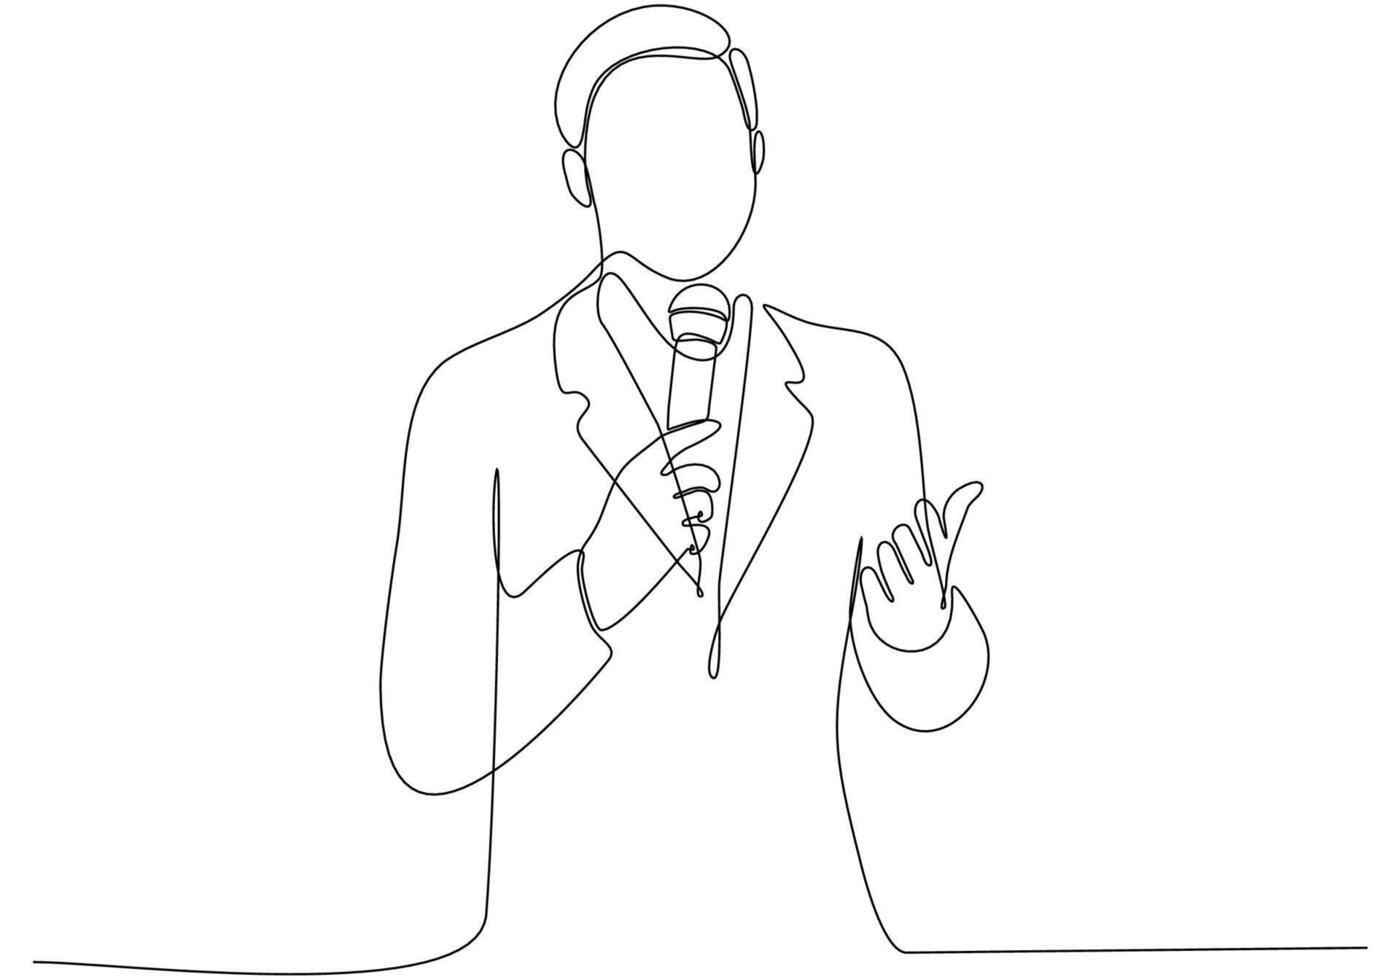 dibujo de línea continua del hombre que sostiene el micrófono, ilustración de vector de símbolo de periodista